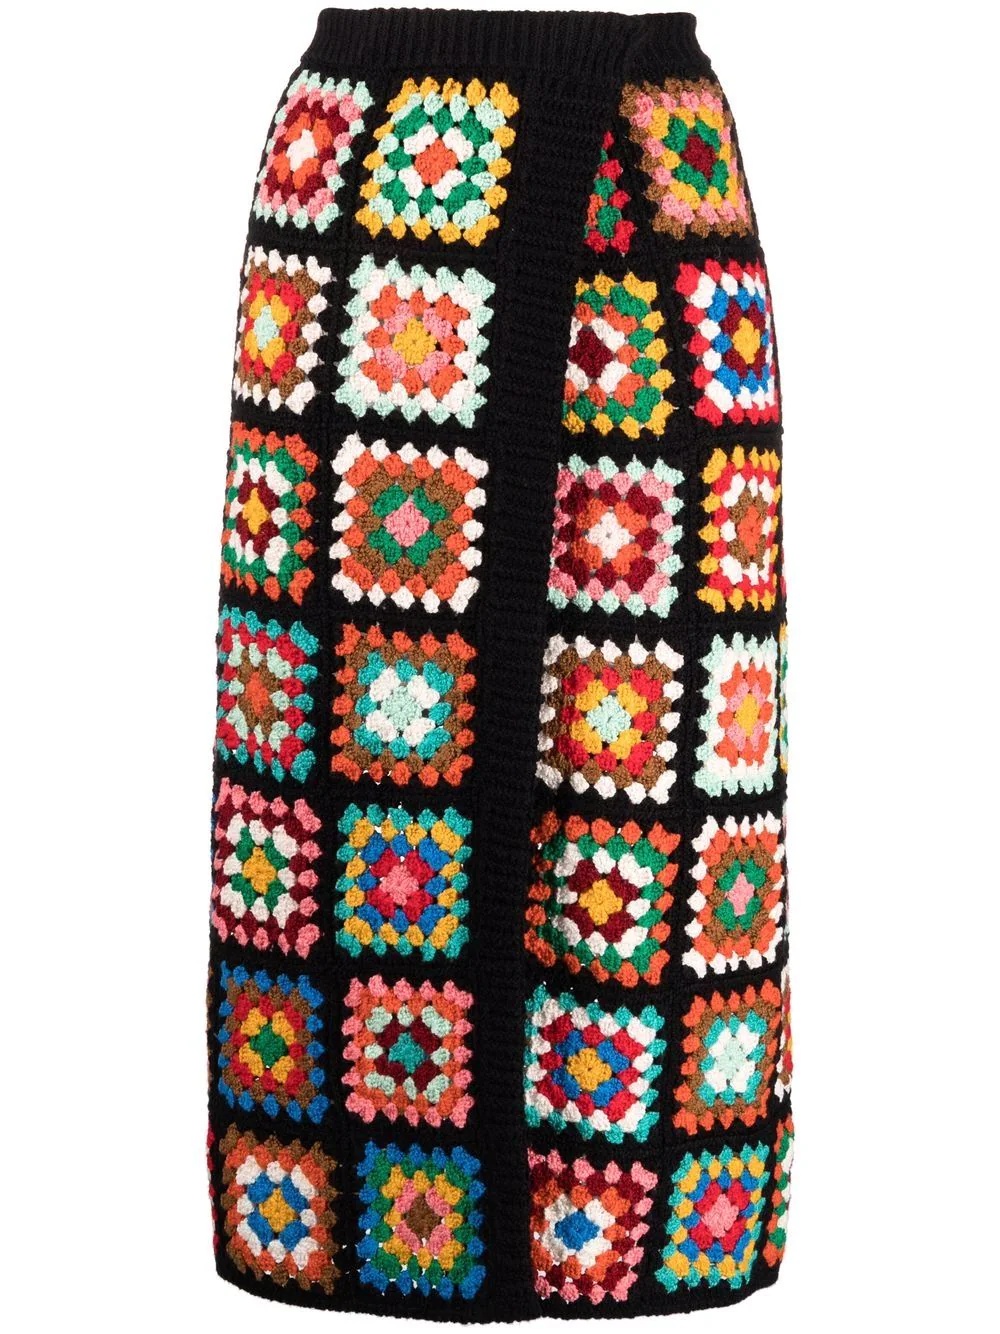 crochet-design skirt - 1